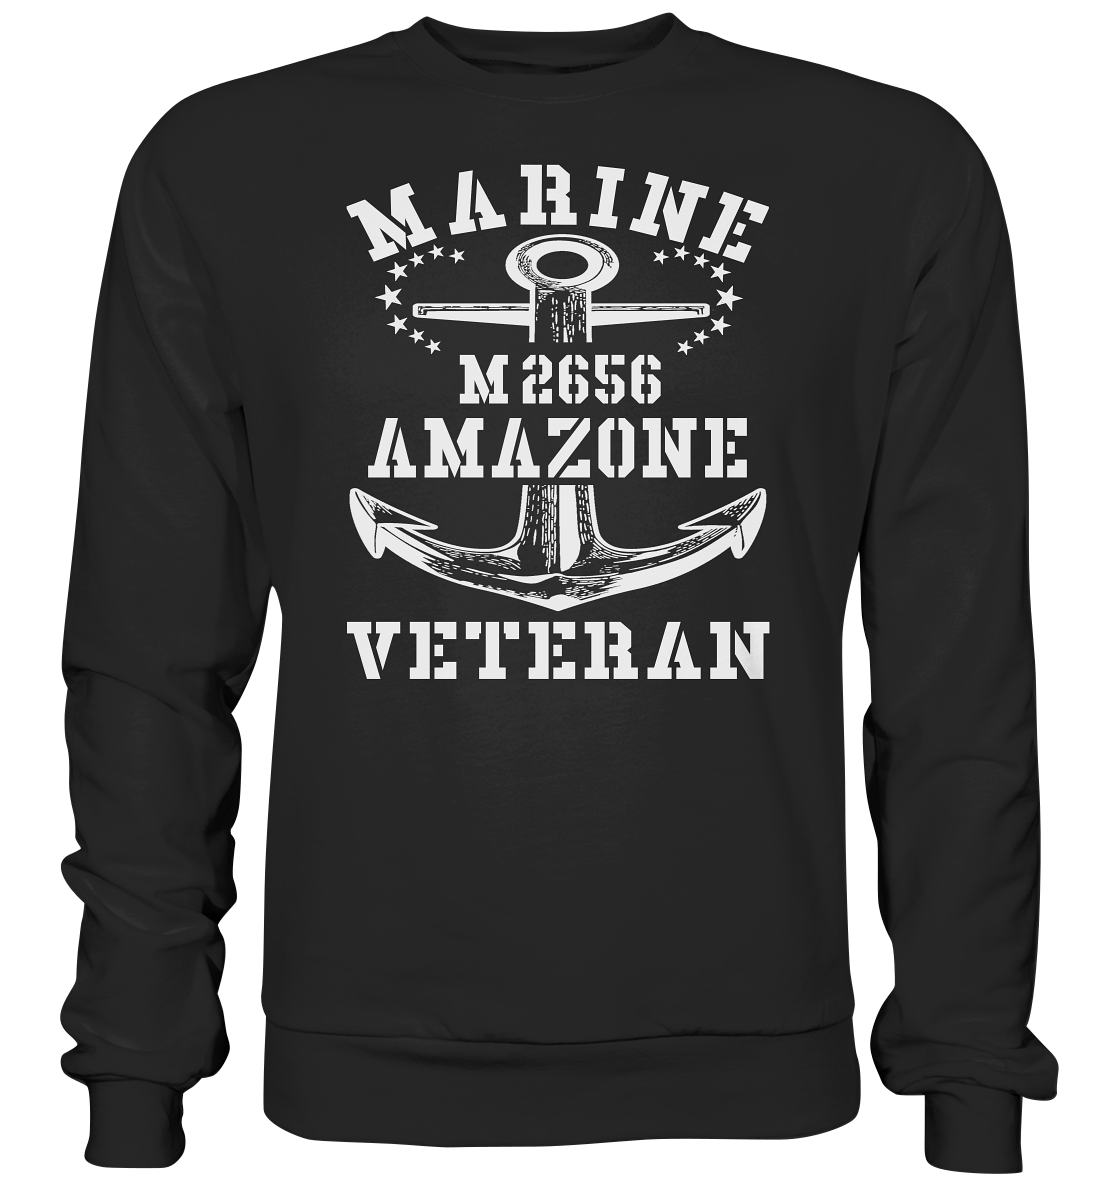 BiMi M2656 AMAZONE Marine Veteran - Premium Sweatshirt